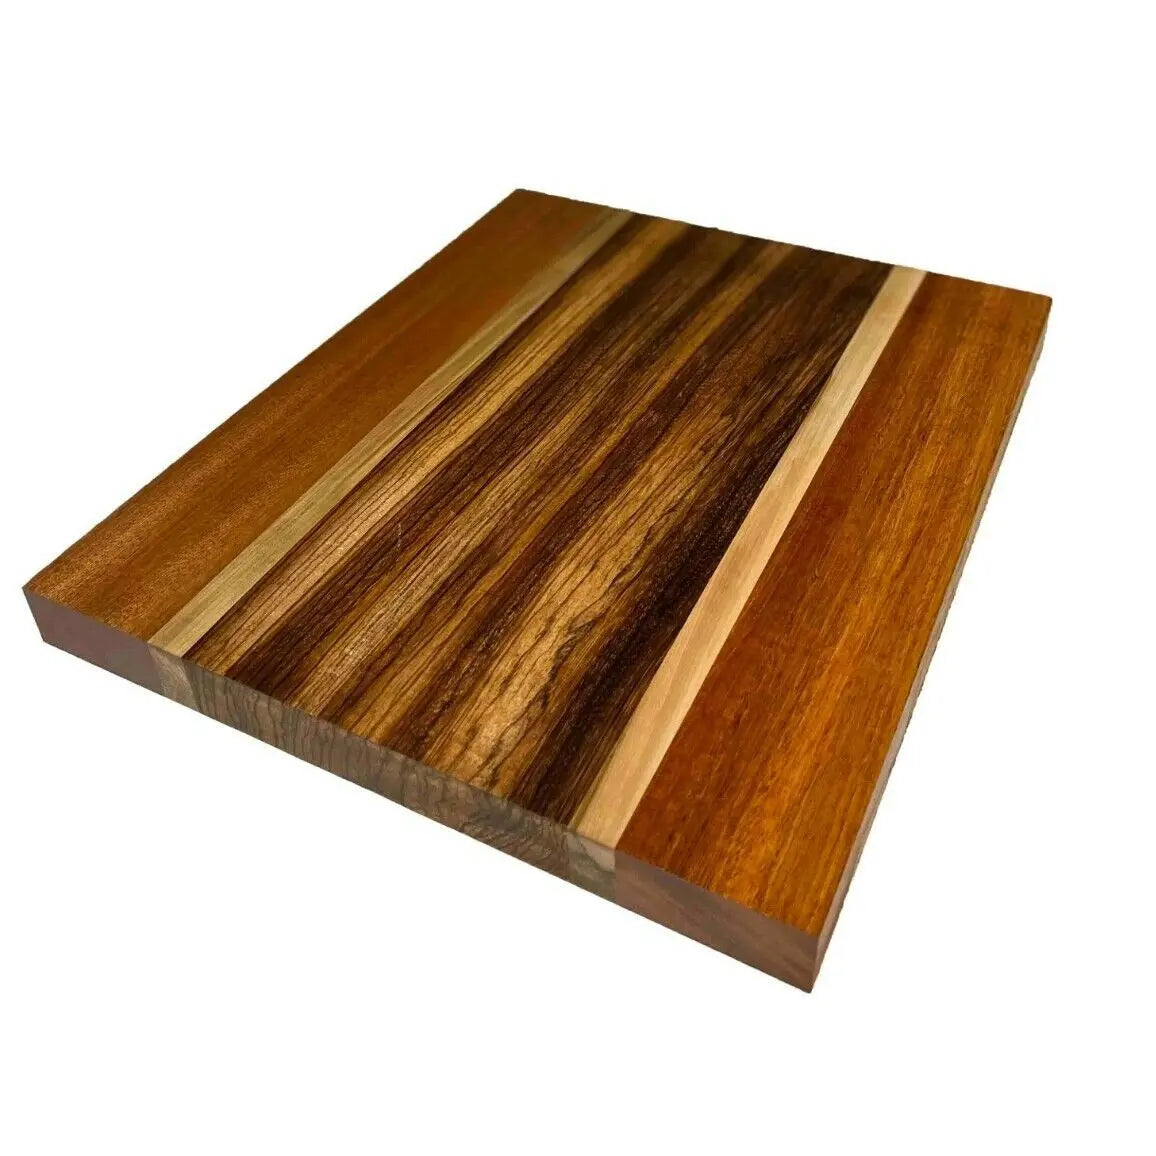 Exotic Cutting Board | Edge grain Cutting board | Handmade Chopping Board  |Square Cutting Board | Serving board |Kitchen Board for Cutting